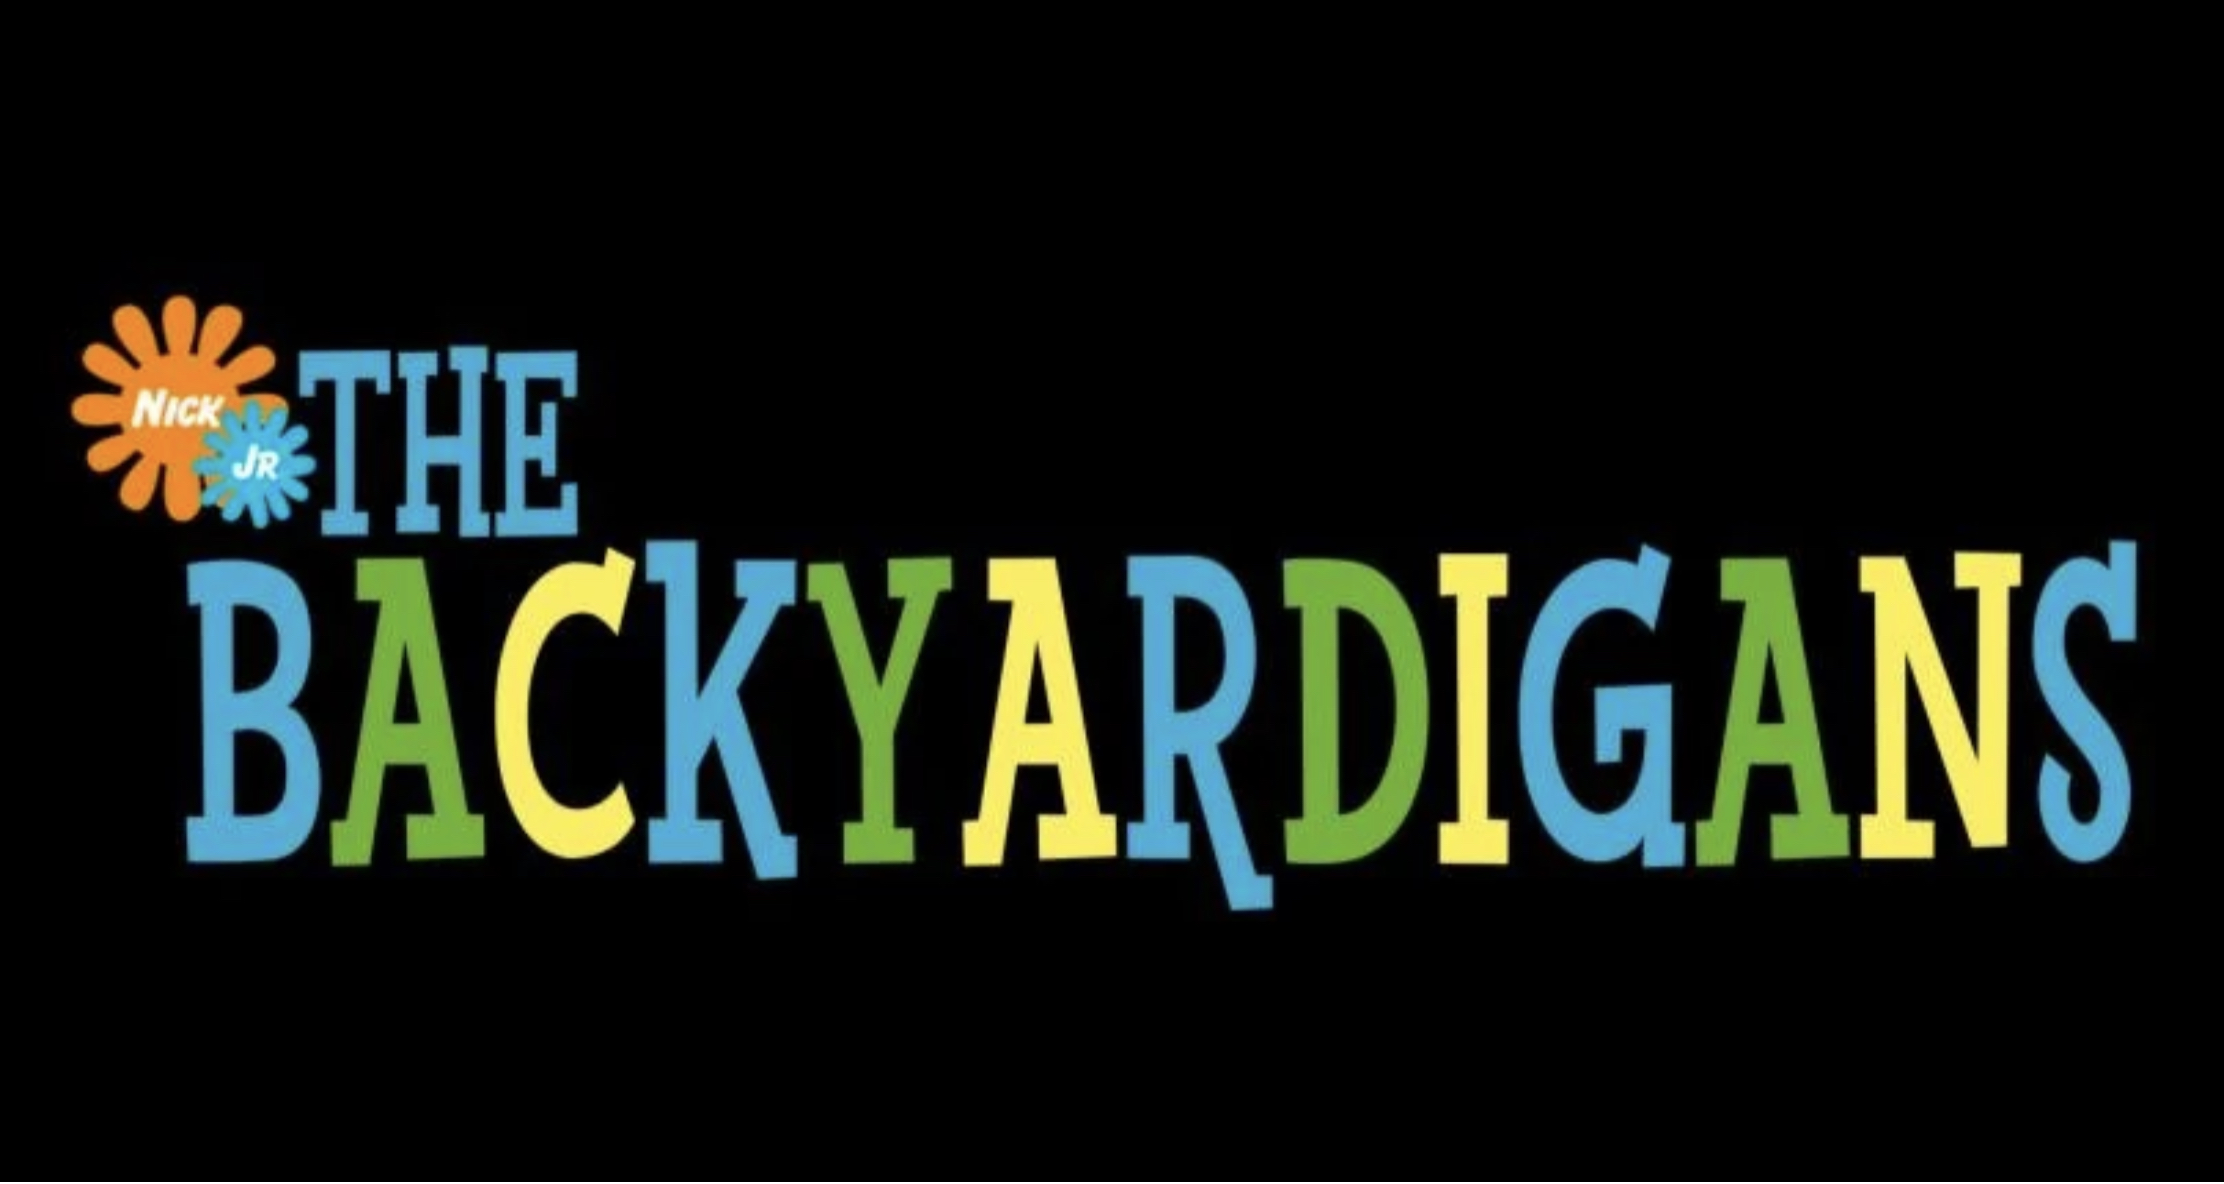 Backyardigans nd pilot logo.jpeg